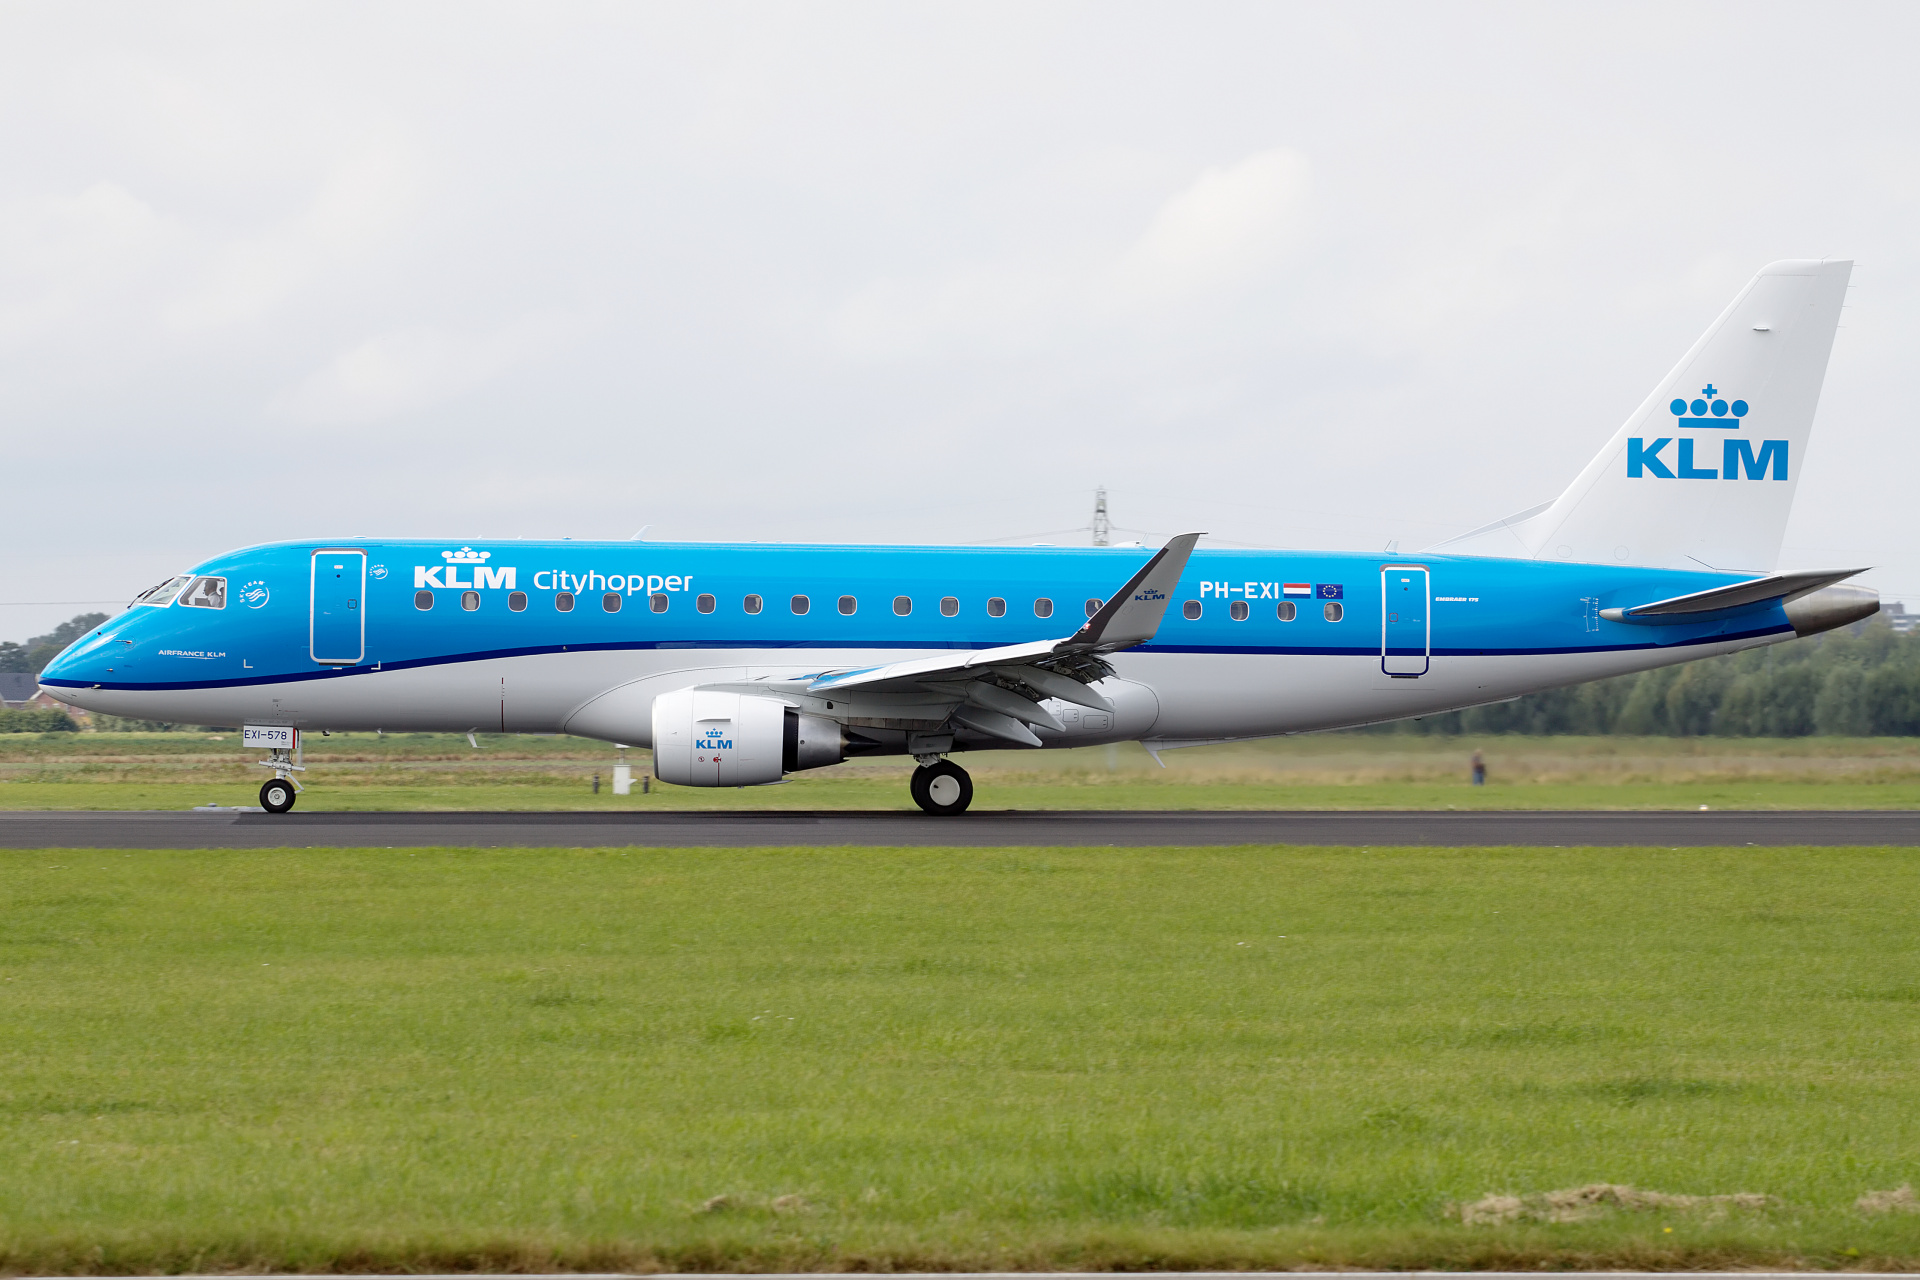 PH-EXI (Aircraft » Schiphol Spotting » Embraer E175 » KLM Cityhopper)